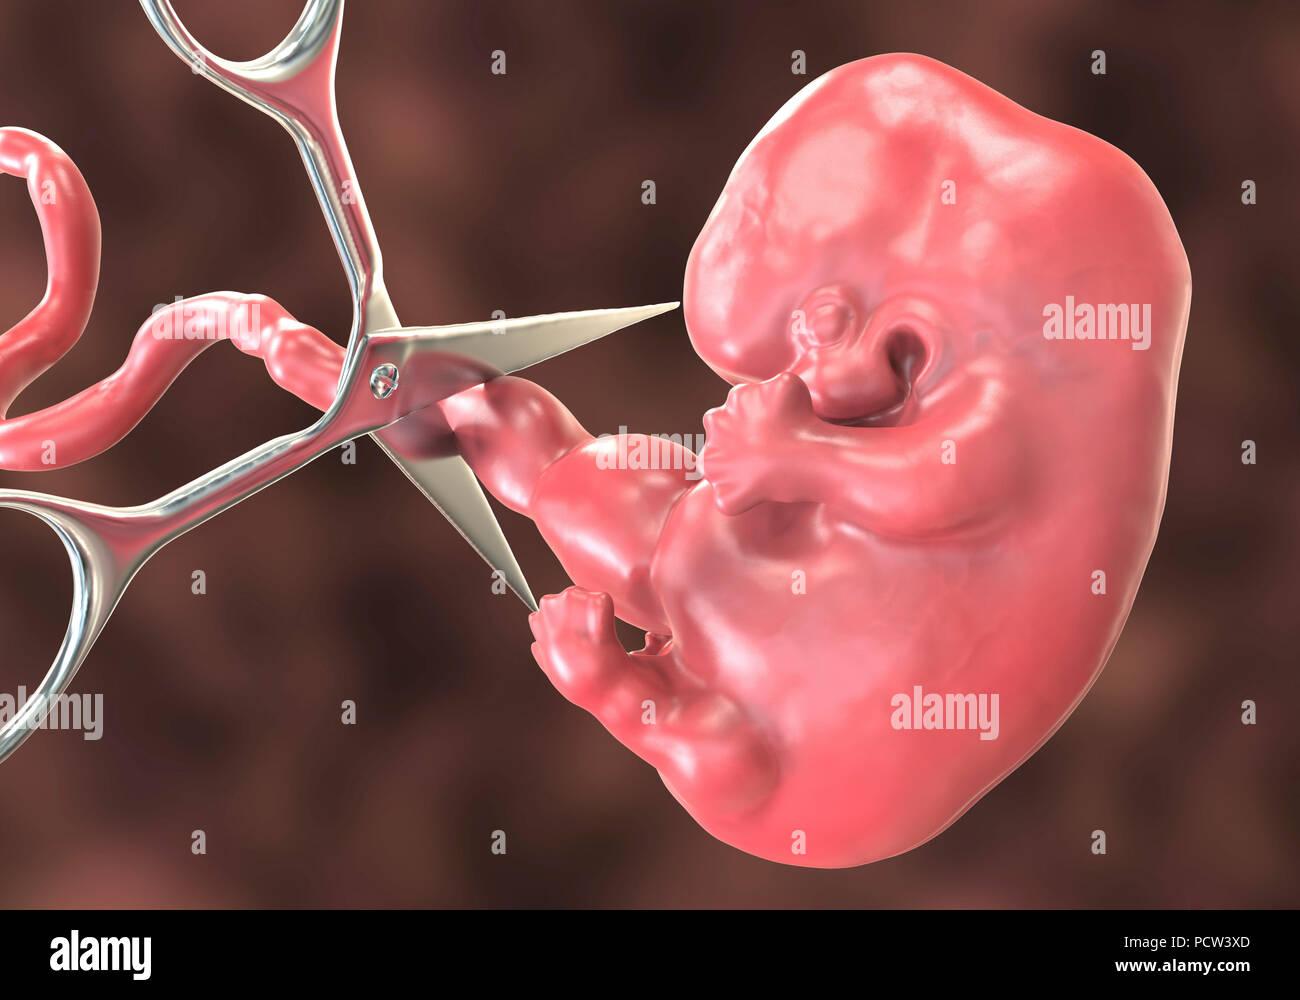 Aborto ilustracion fotografías e imágenes de alta resolución - Alamy